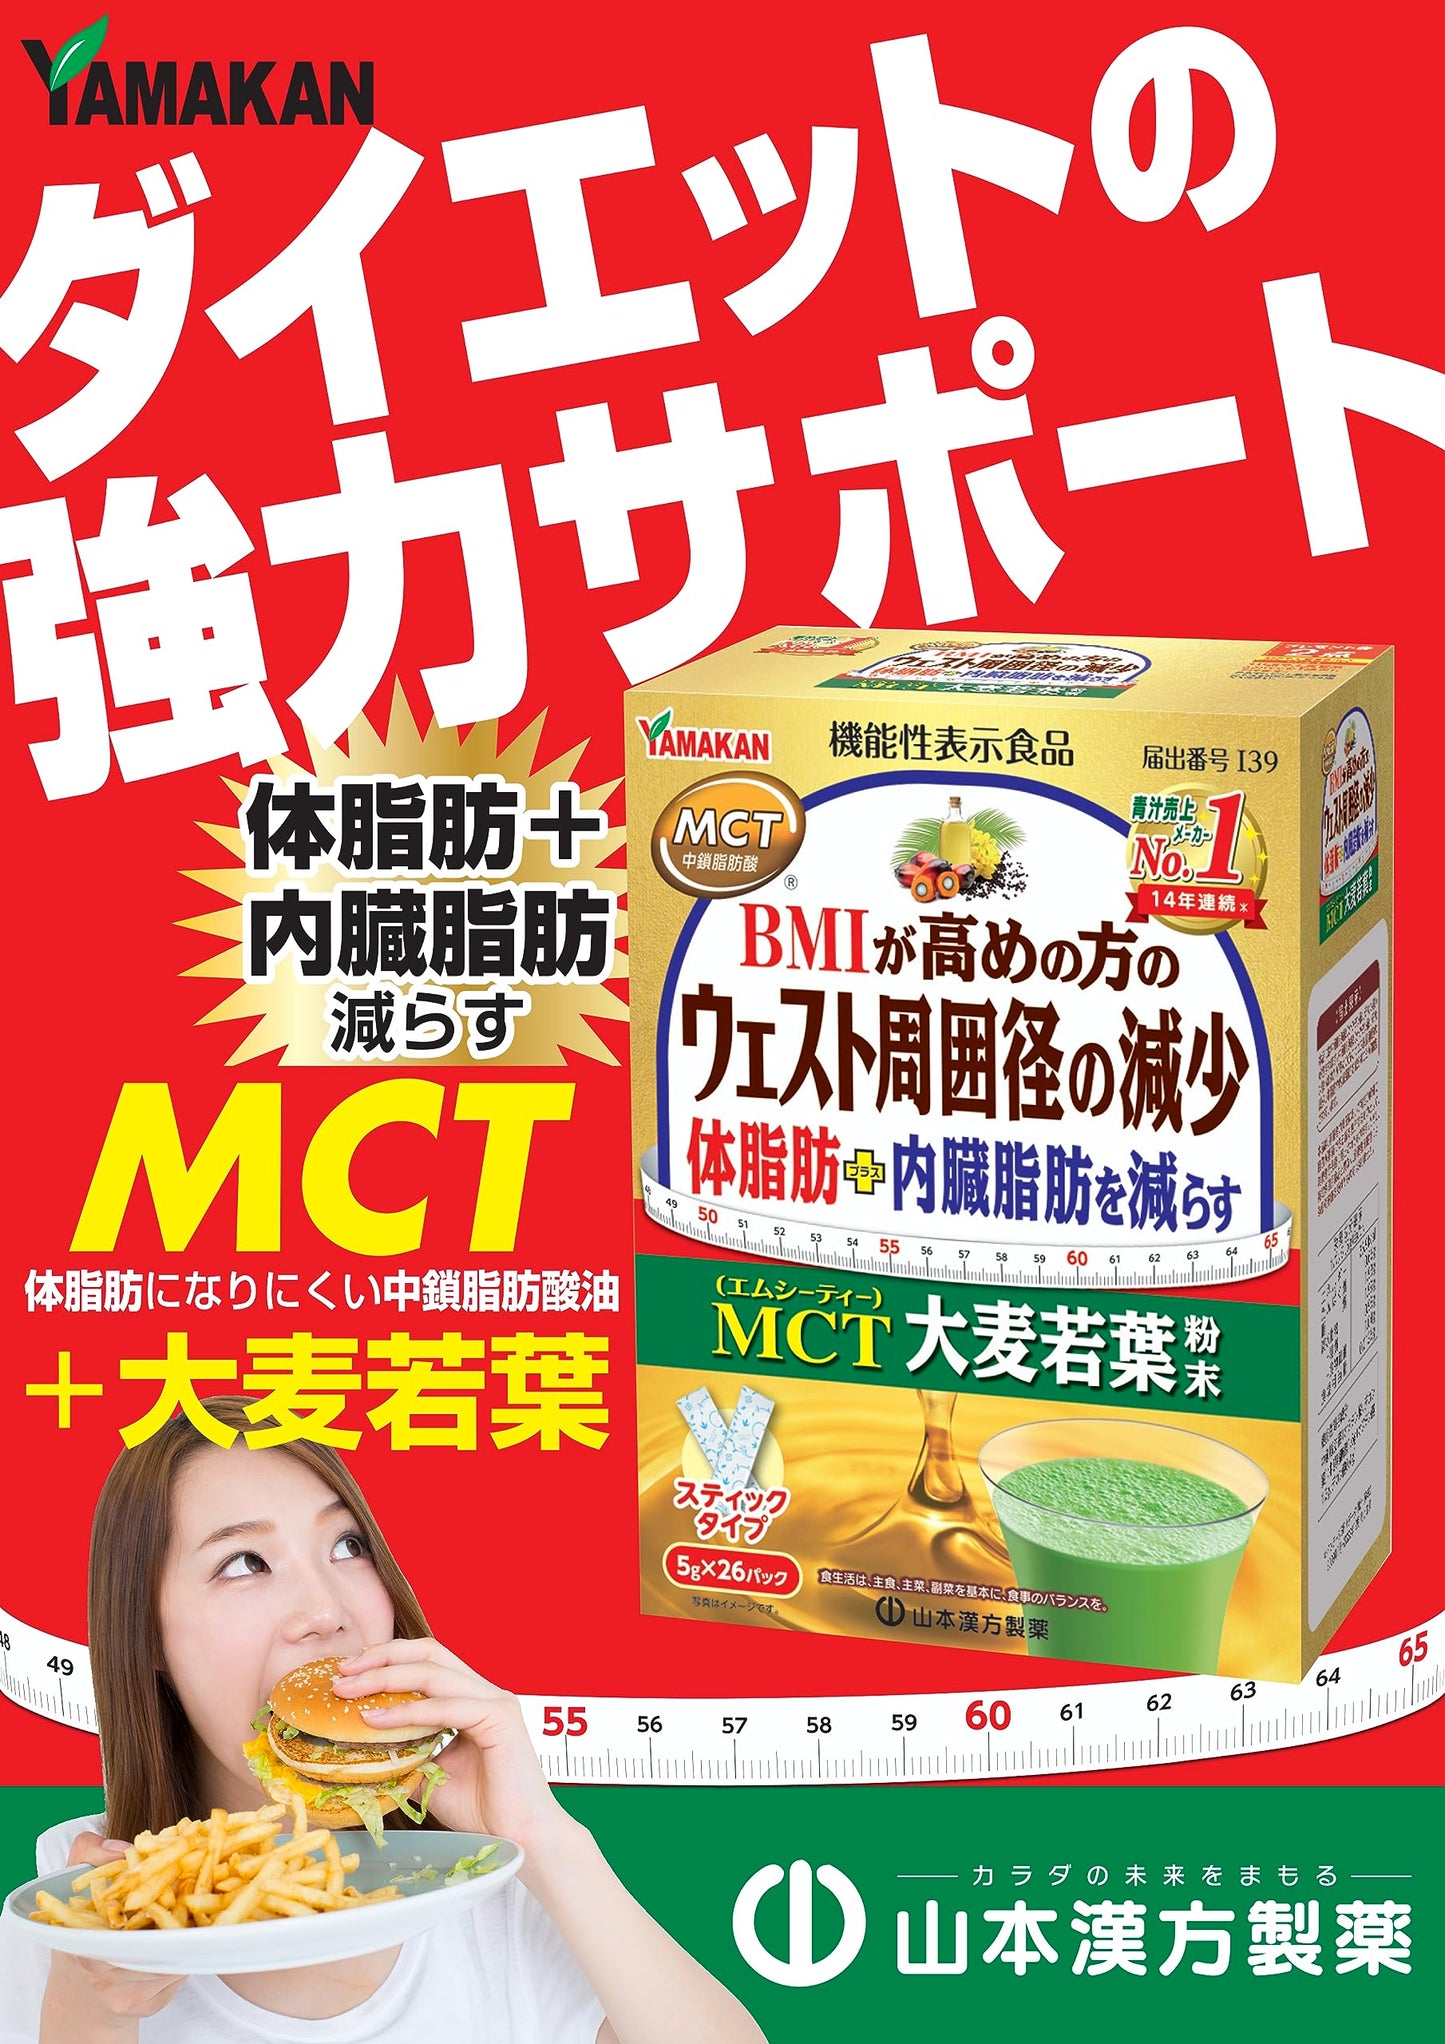 [功能聲稱食品] 山本漢方製藥 MCT 大麥草粉 5g x 26 包